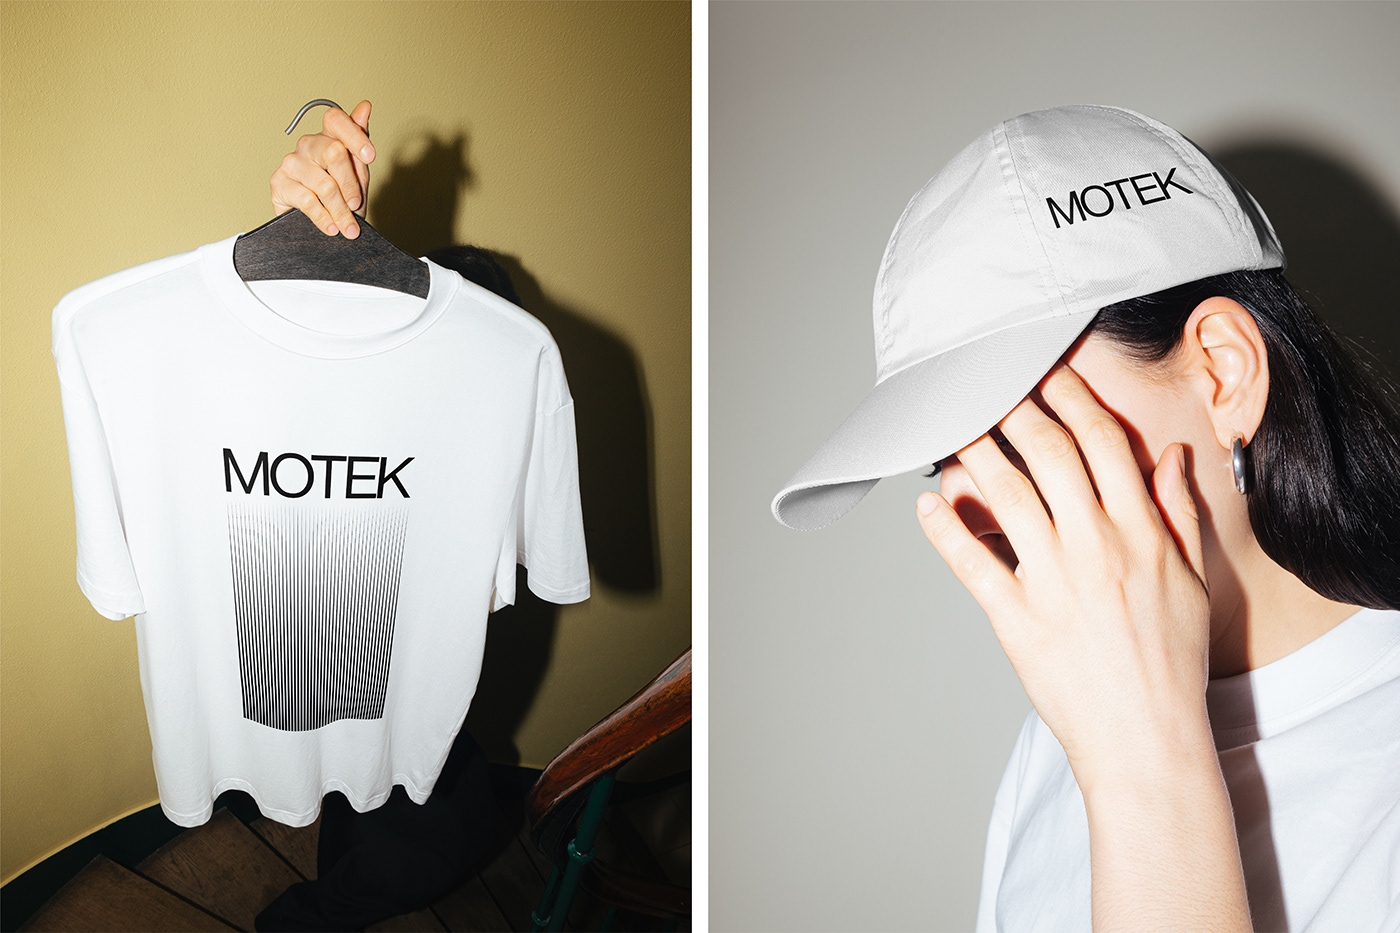 Motek机油品牌视觉形象设计